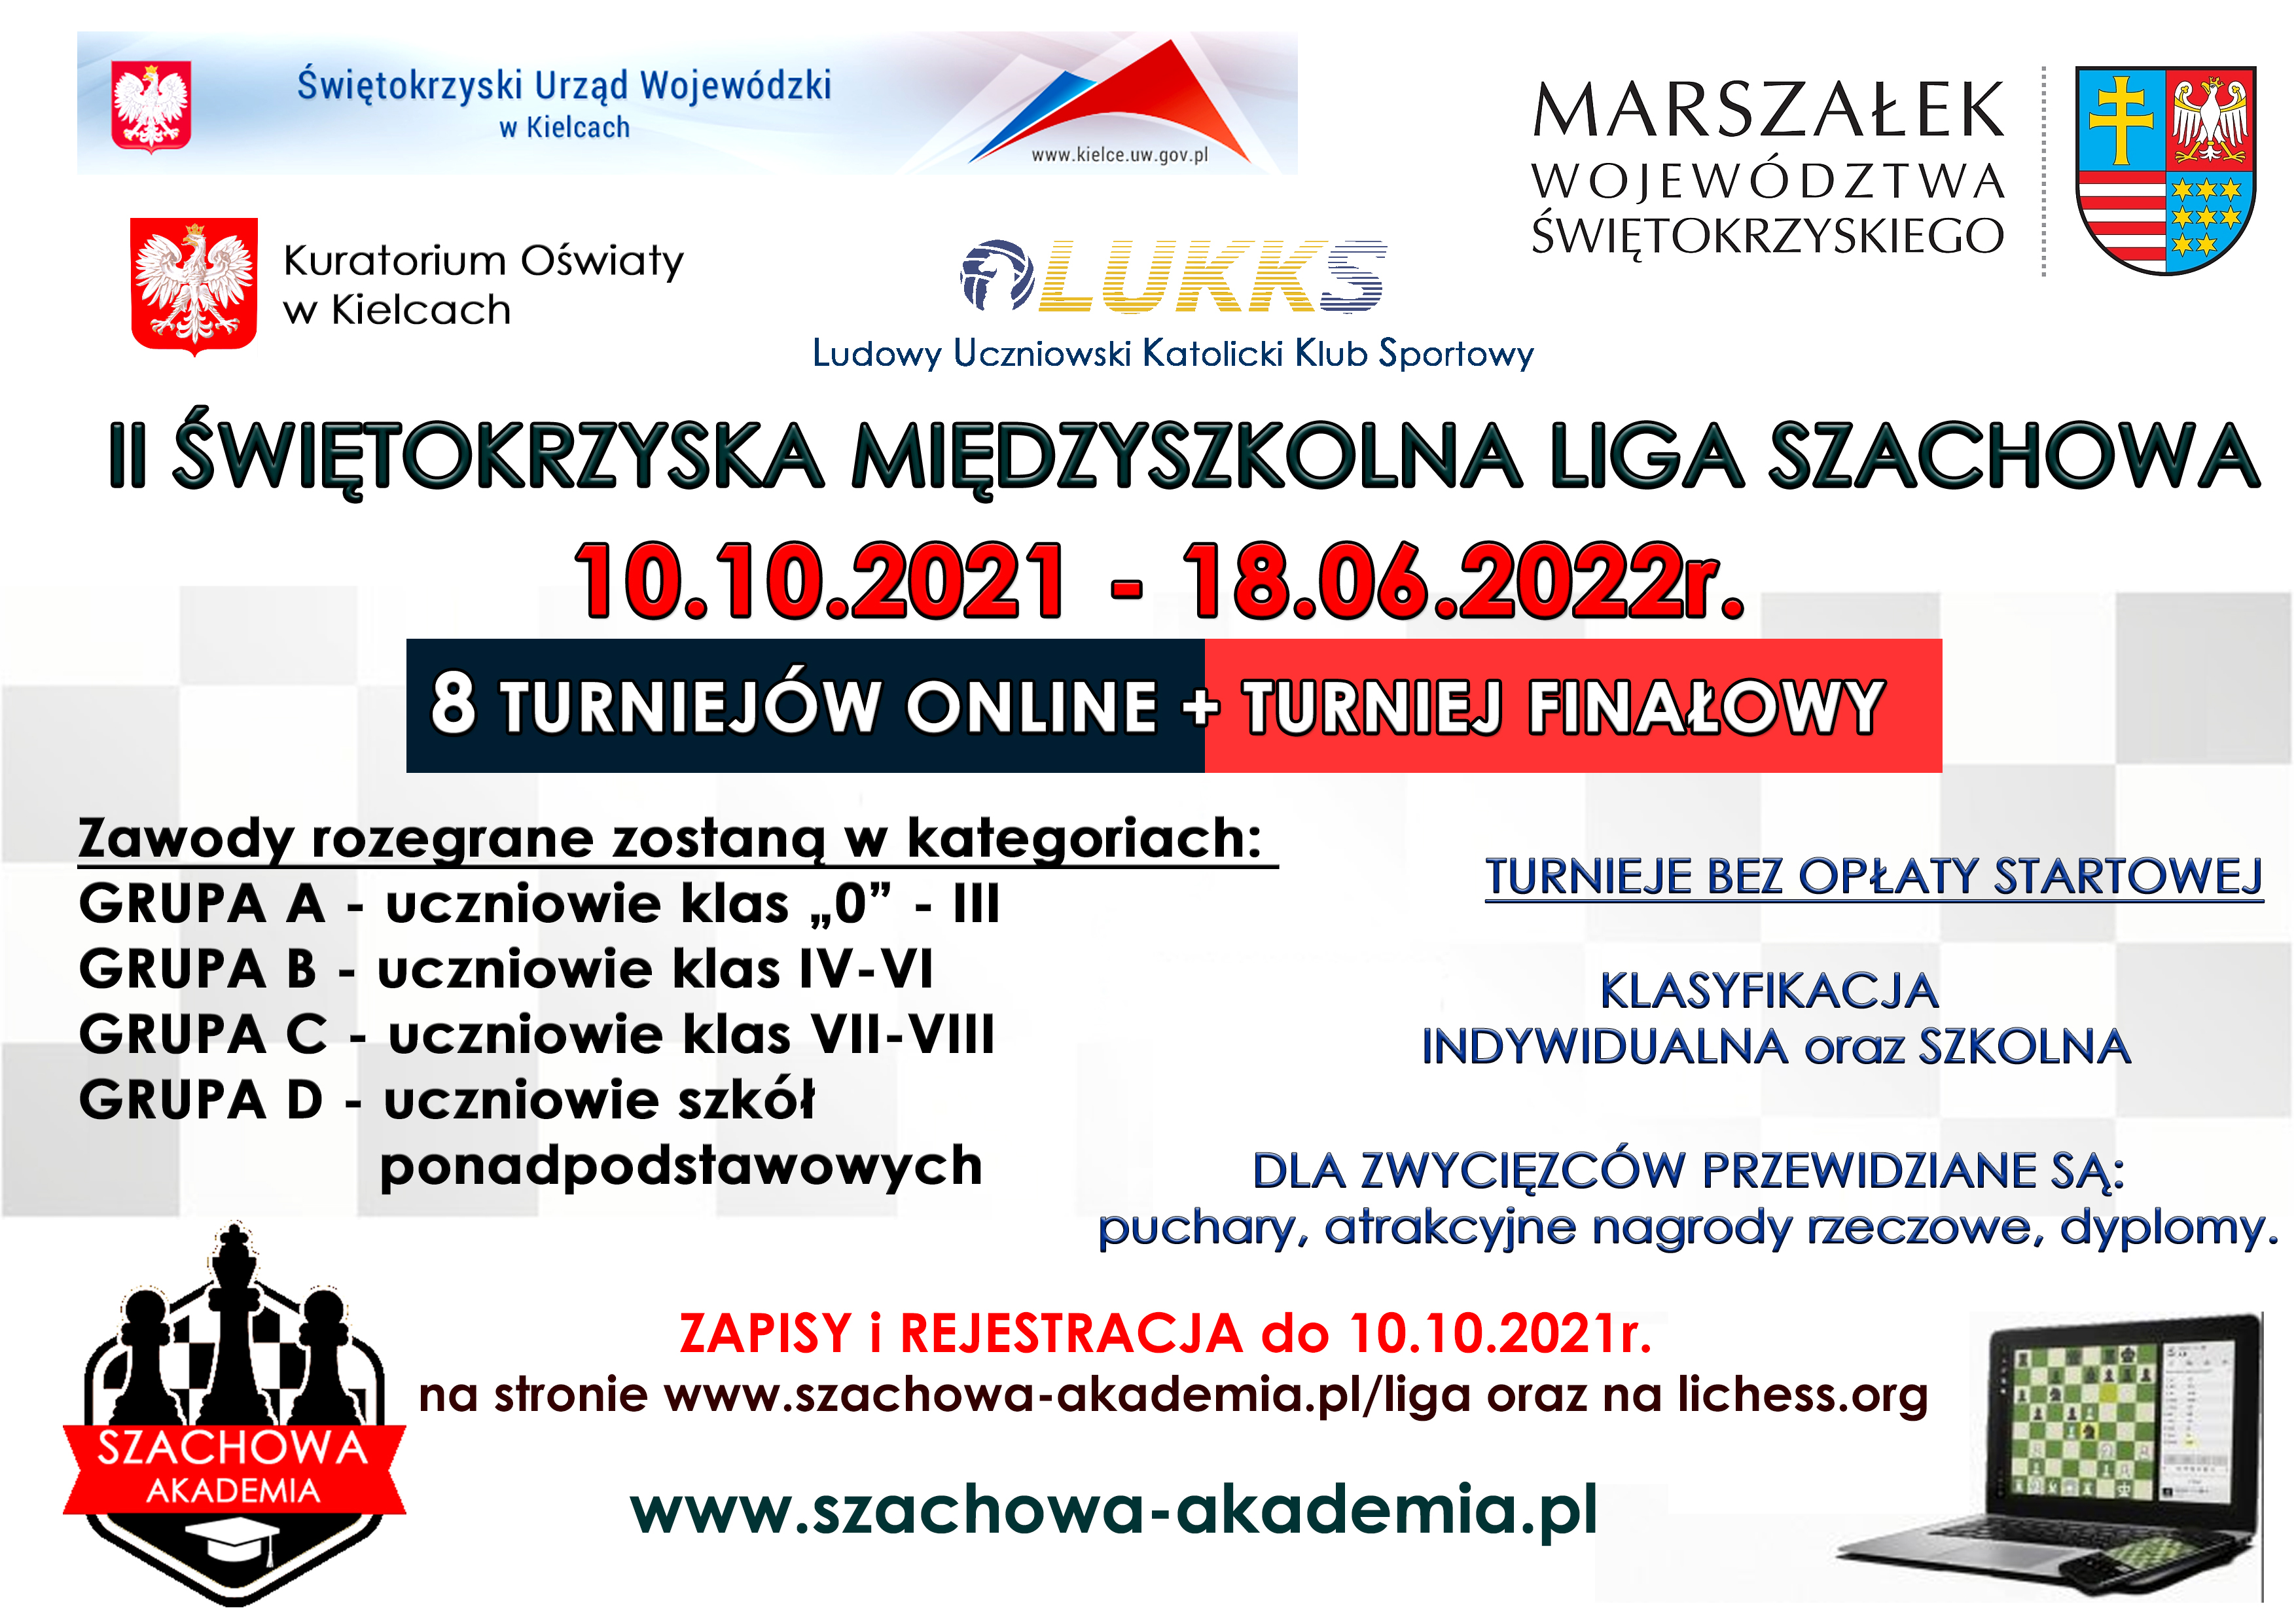 Grafika przedstawiająca plakat II Świętokrzyskiej Międzyszkolnej Ligi Szachowej, która będzie odbywała się w dniach od 10.10.2021 do 18.06.2022